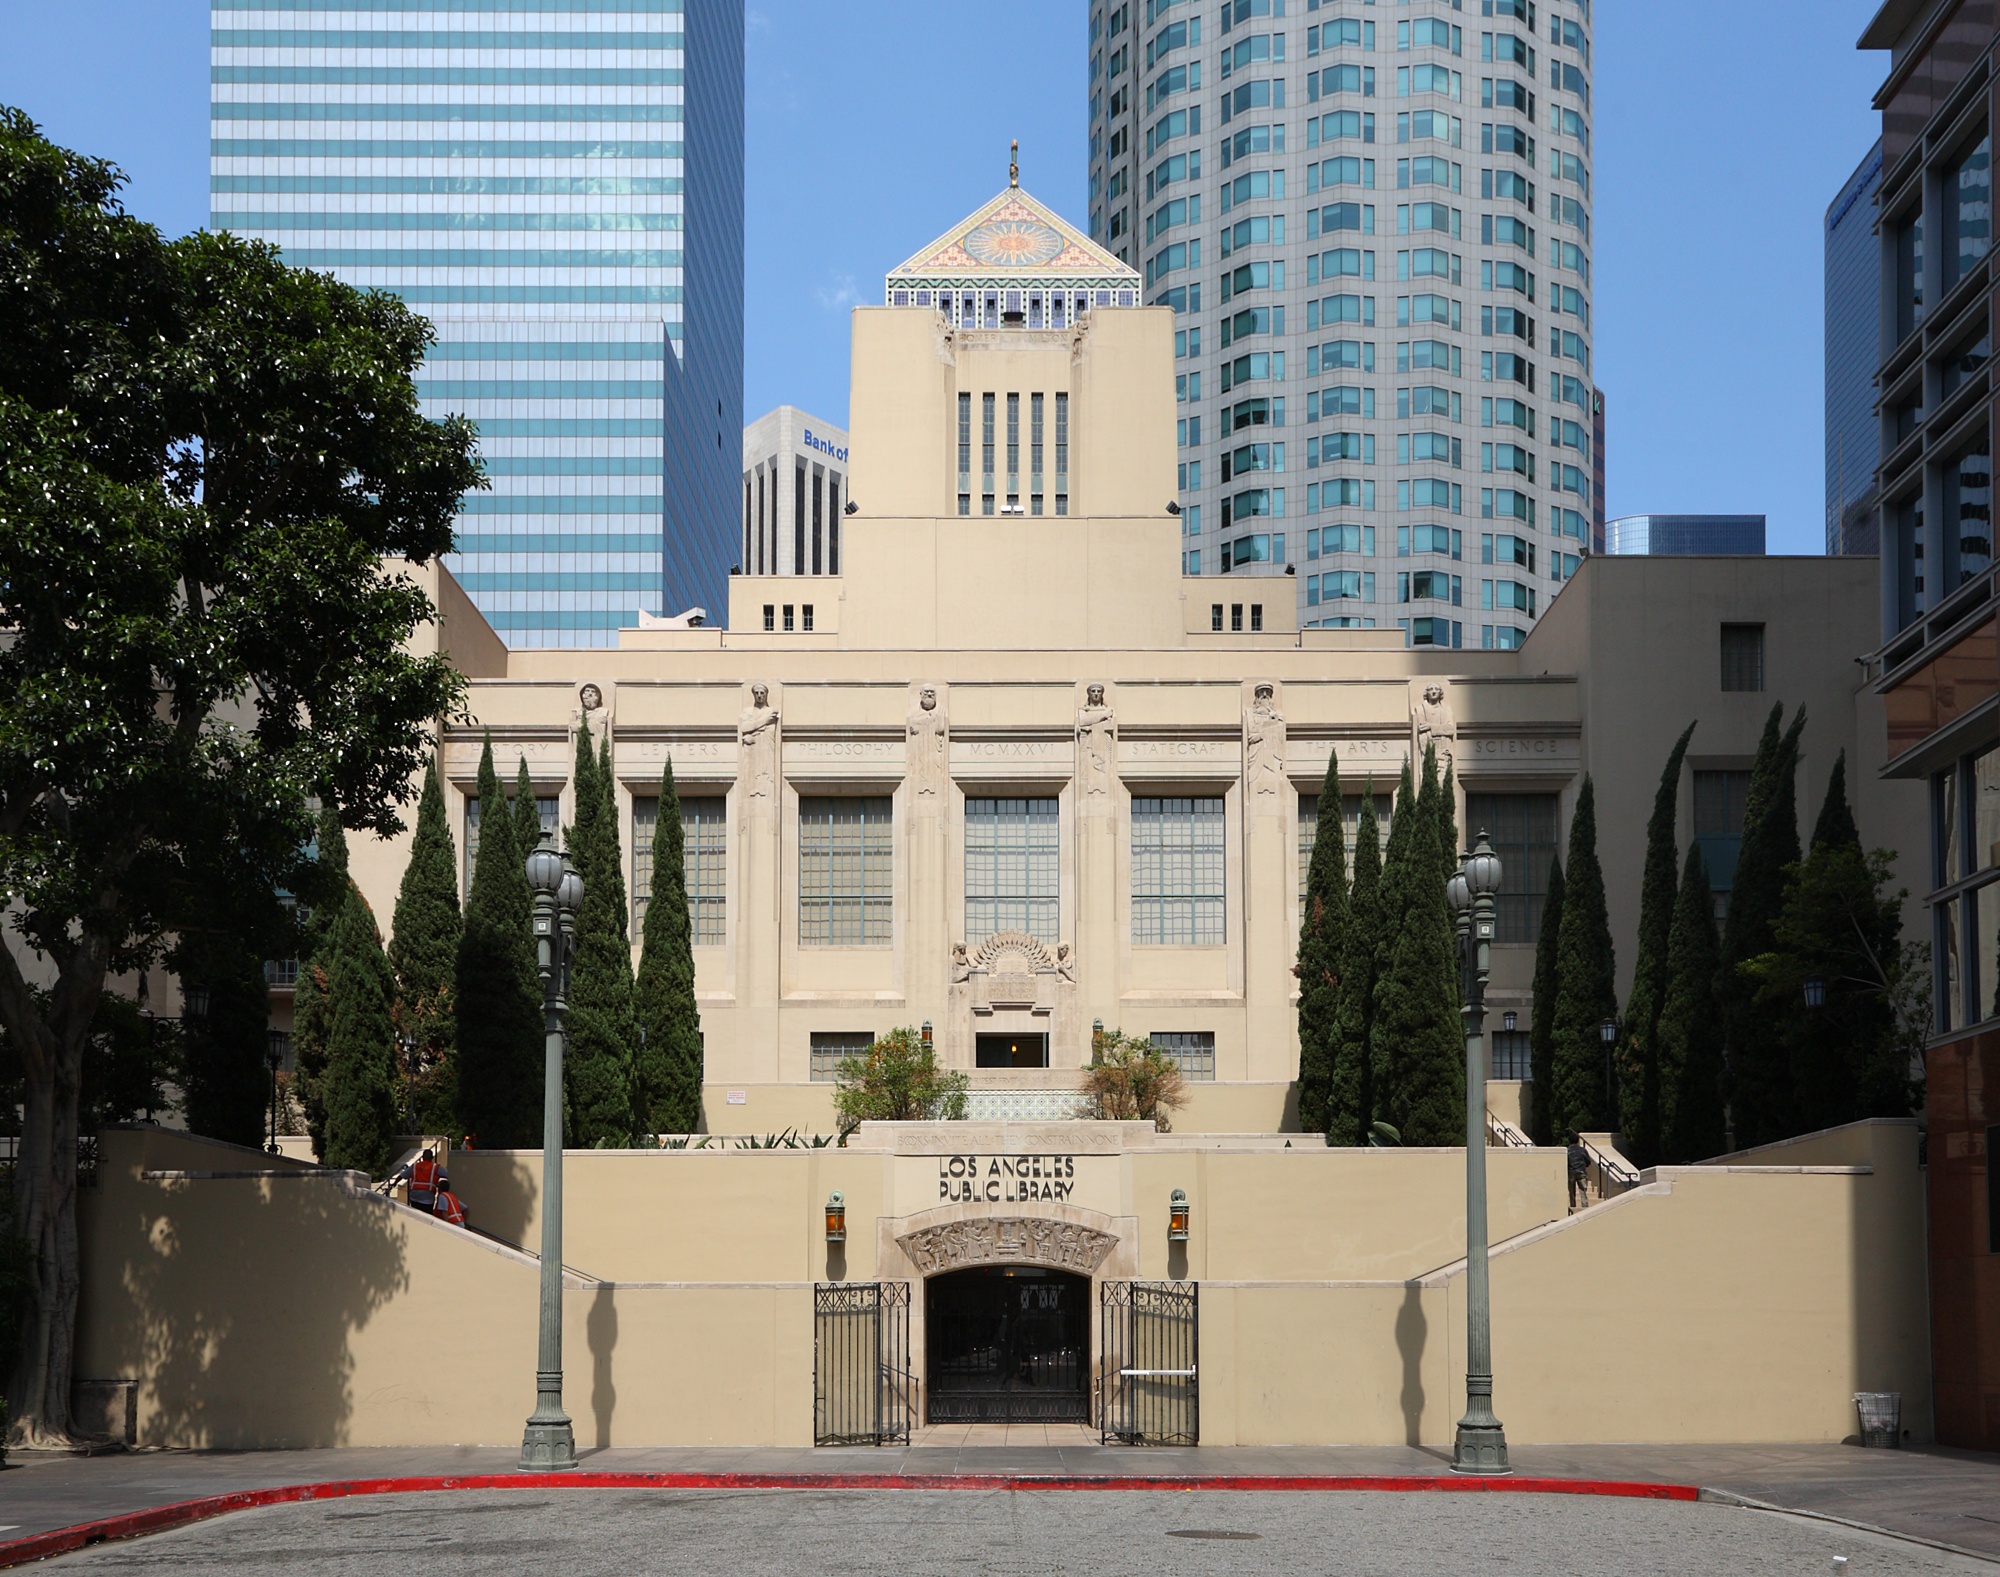 LA central library building